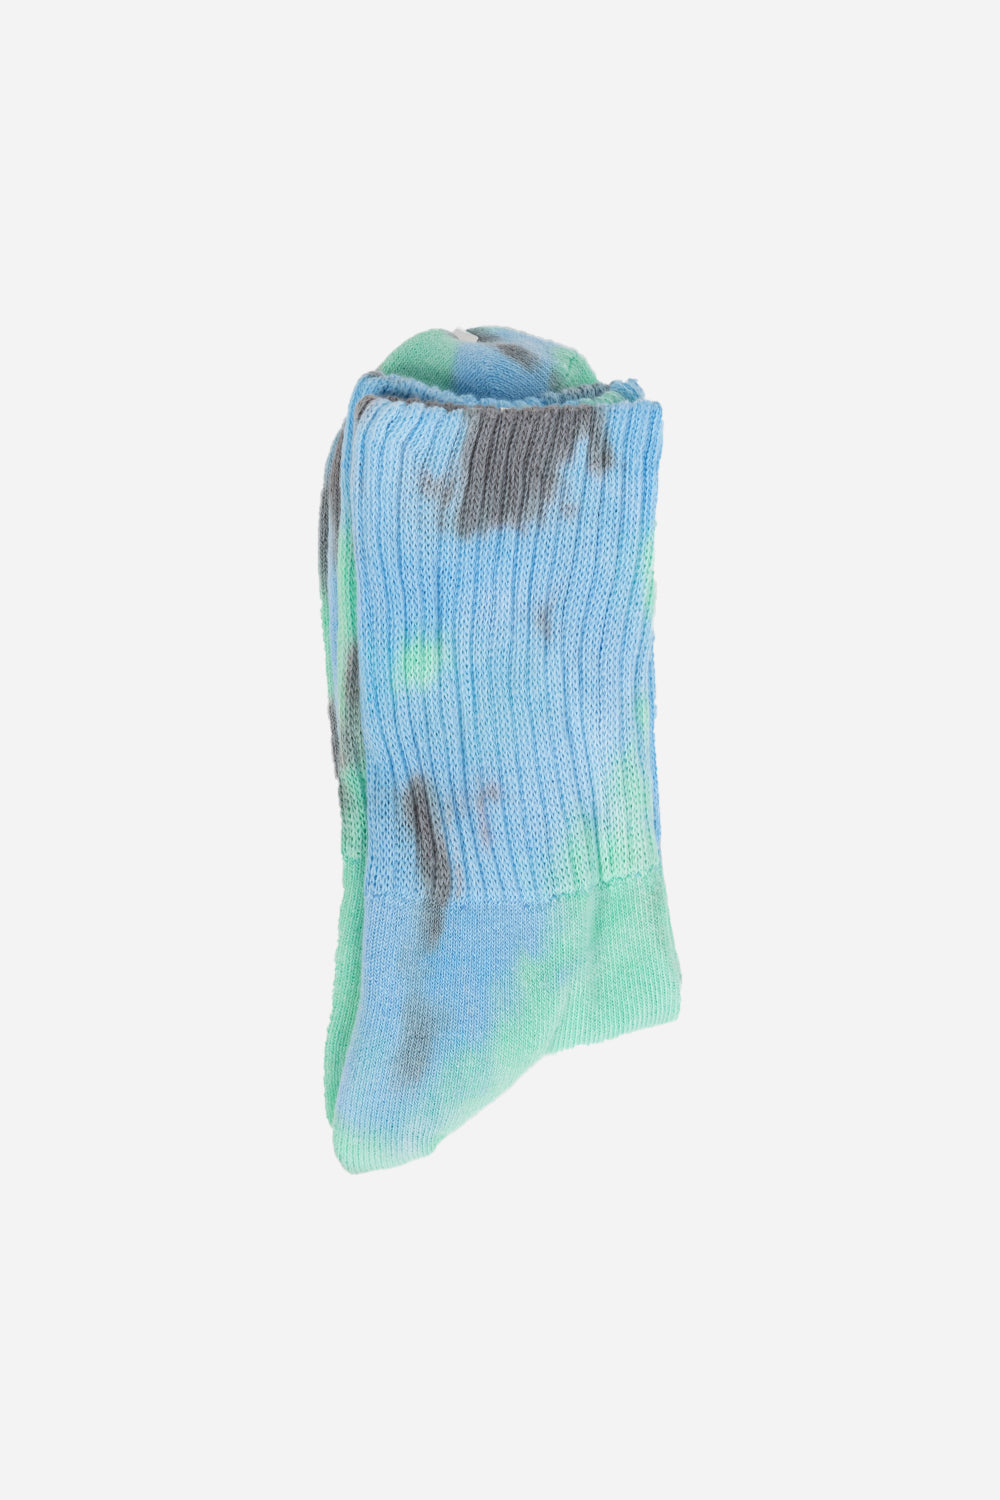 Rostersox-td-green-3-socks